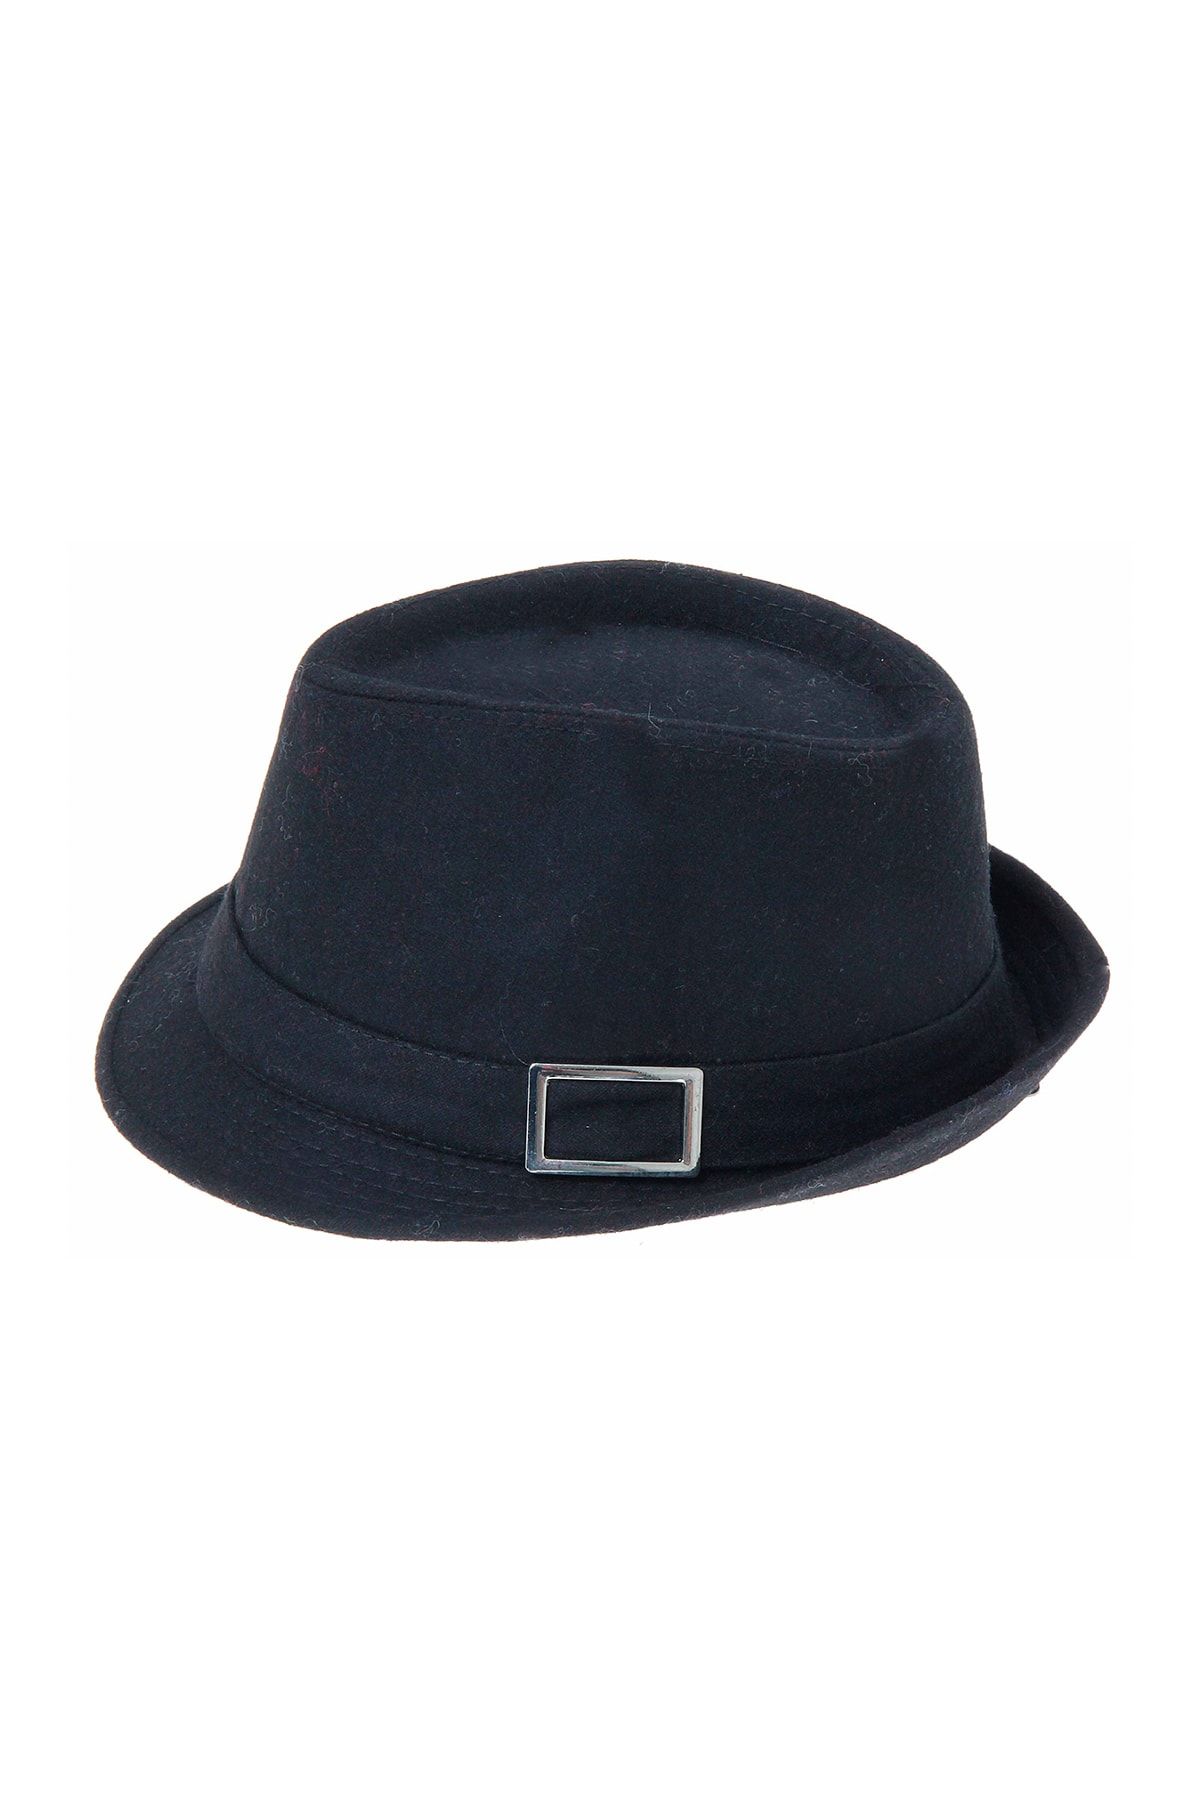 Bay Şapkacı Tükendi - Kaşe Kadın Siyah Fötr Şapka 4789